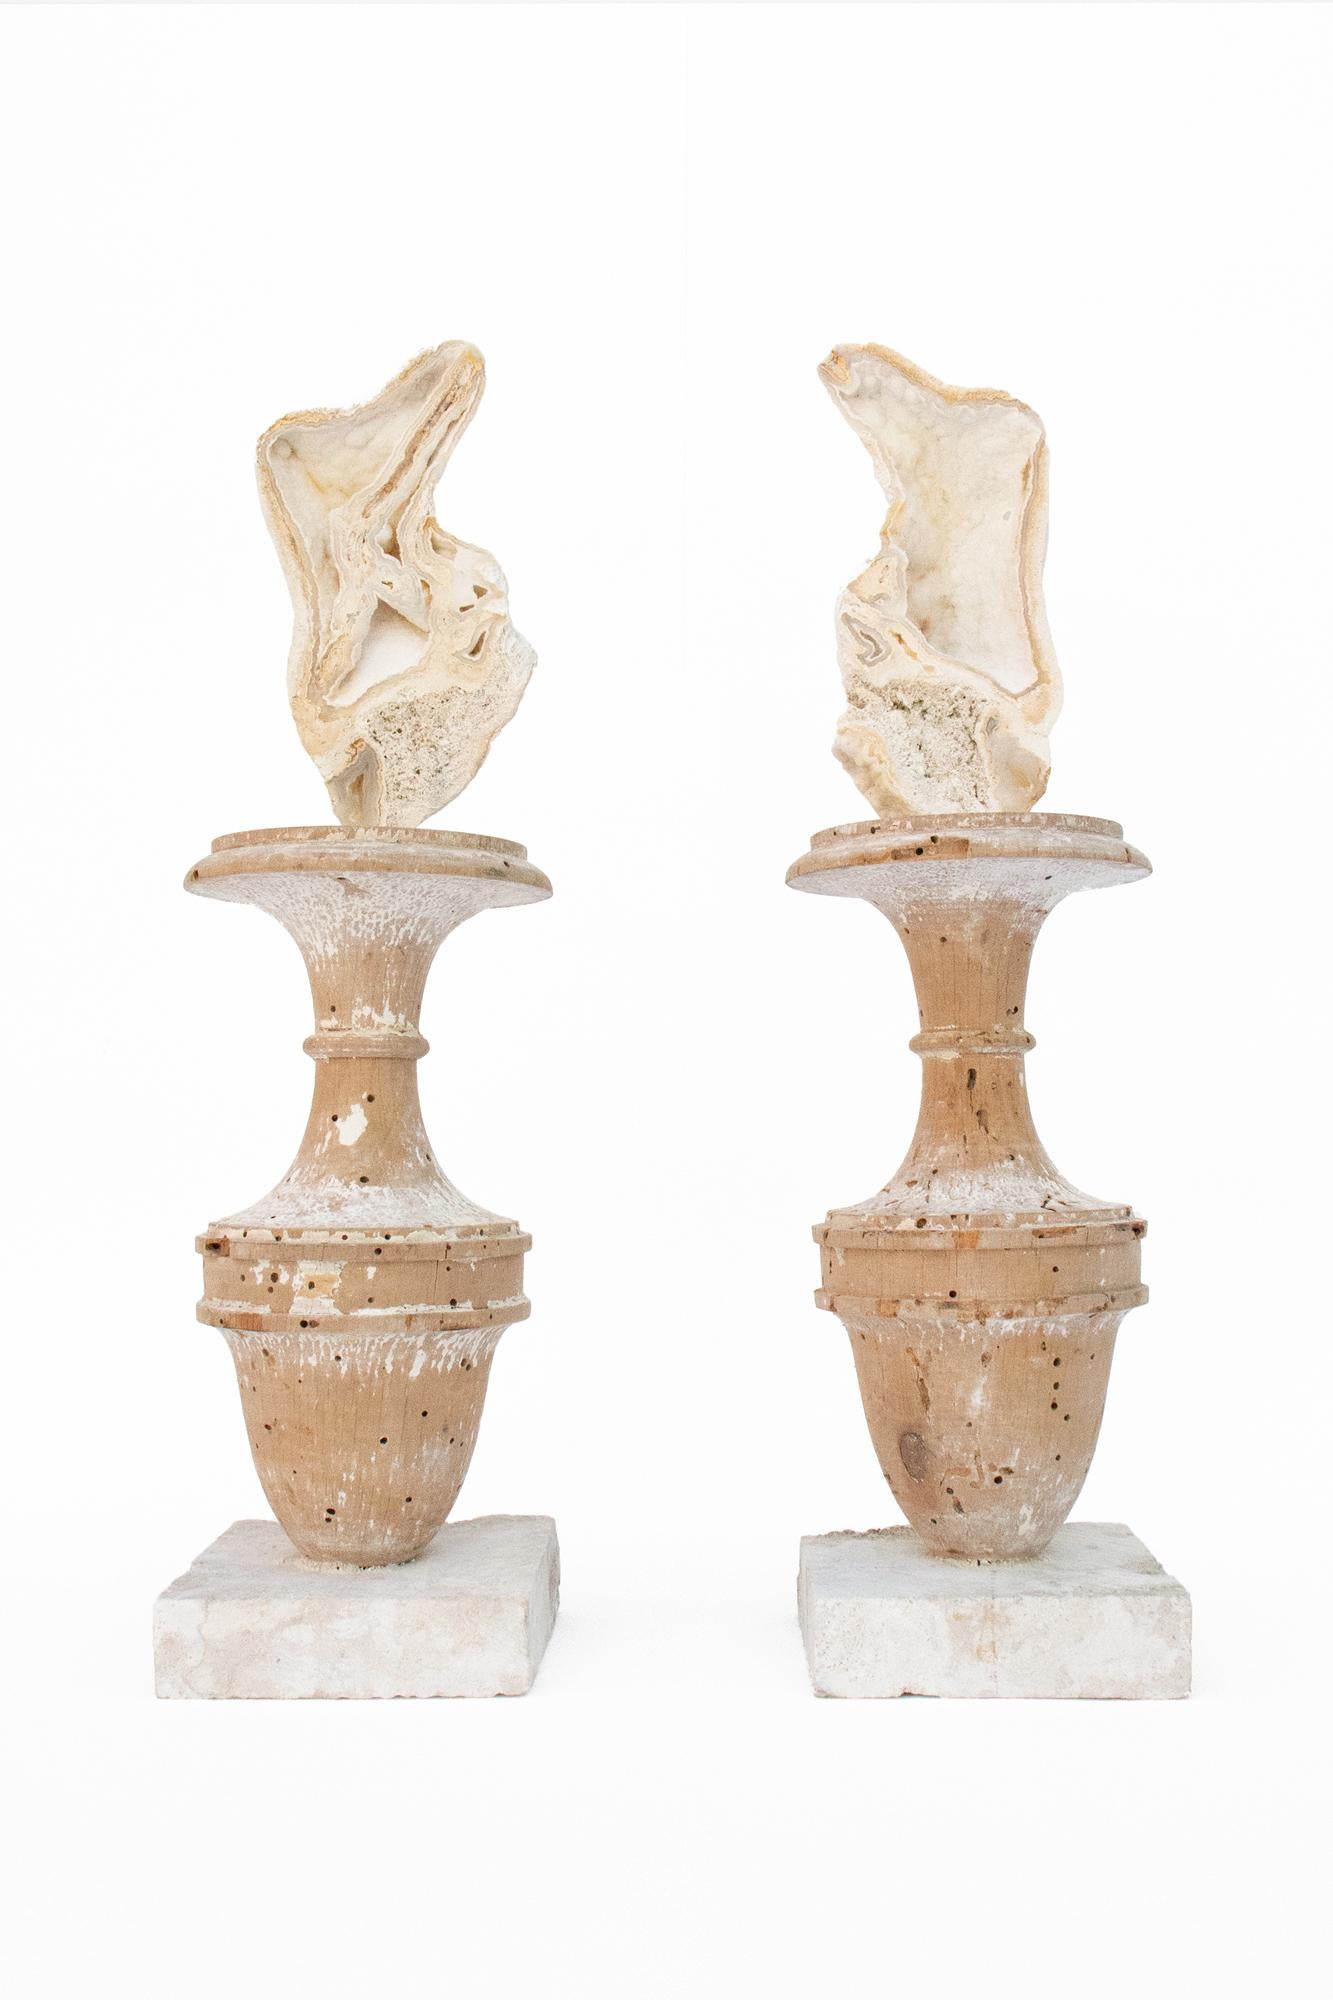 Ein Paar italienische Fragmentvasen aus dem 17. Jahrhundert, verziert mit fossilen Achatkorallen auf Sockeln aus geschliffenen Steinkorallen.

Das Paar stammt aus einer Kirche in Florenz. Sie wurden gefunden und vor dem historischen Hochwasser des